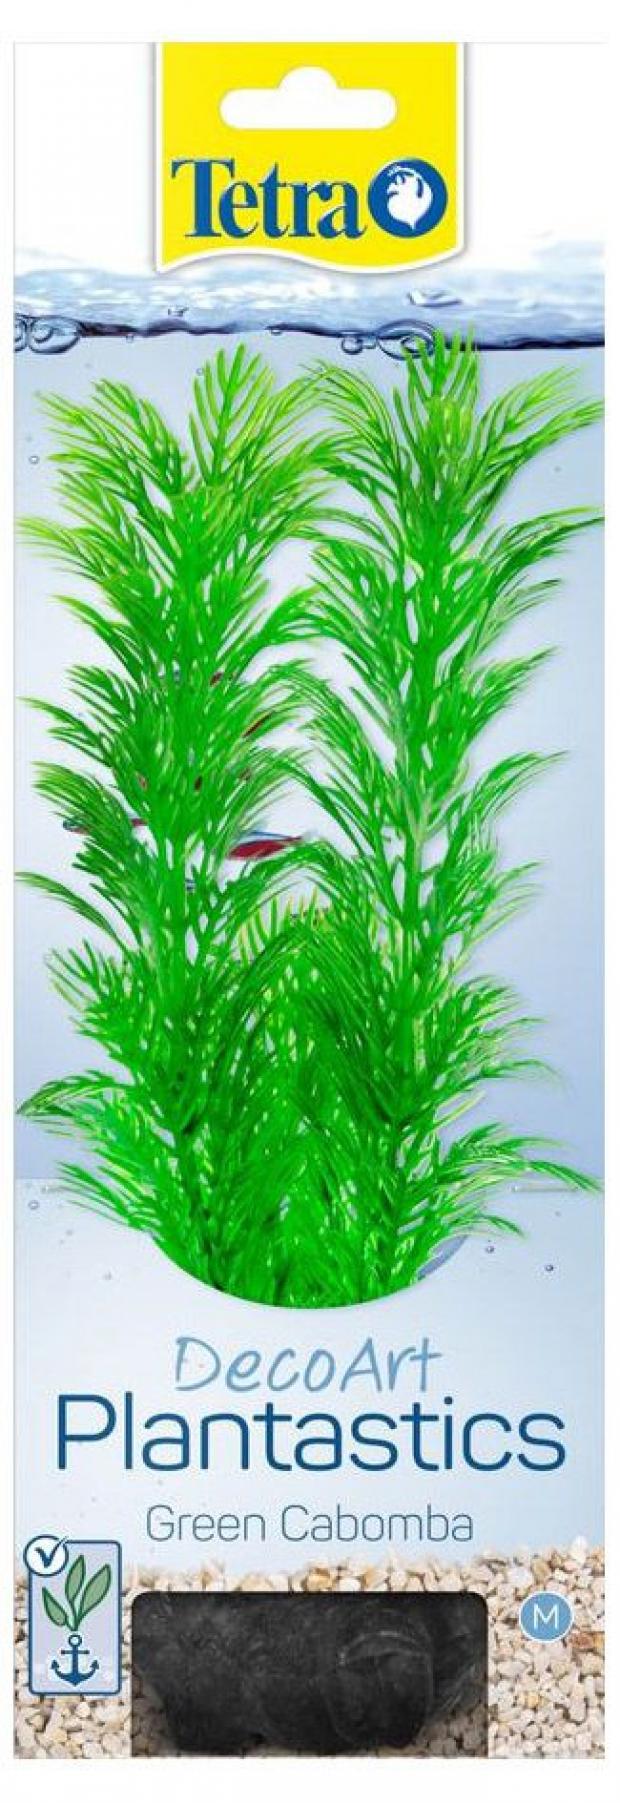 Фото - Растение для аквариума Tetra Deco Art кабомба M, 23 см распылитель для аквариума tetra as 30